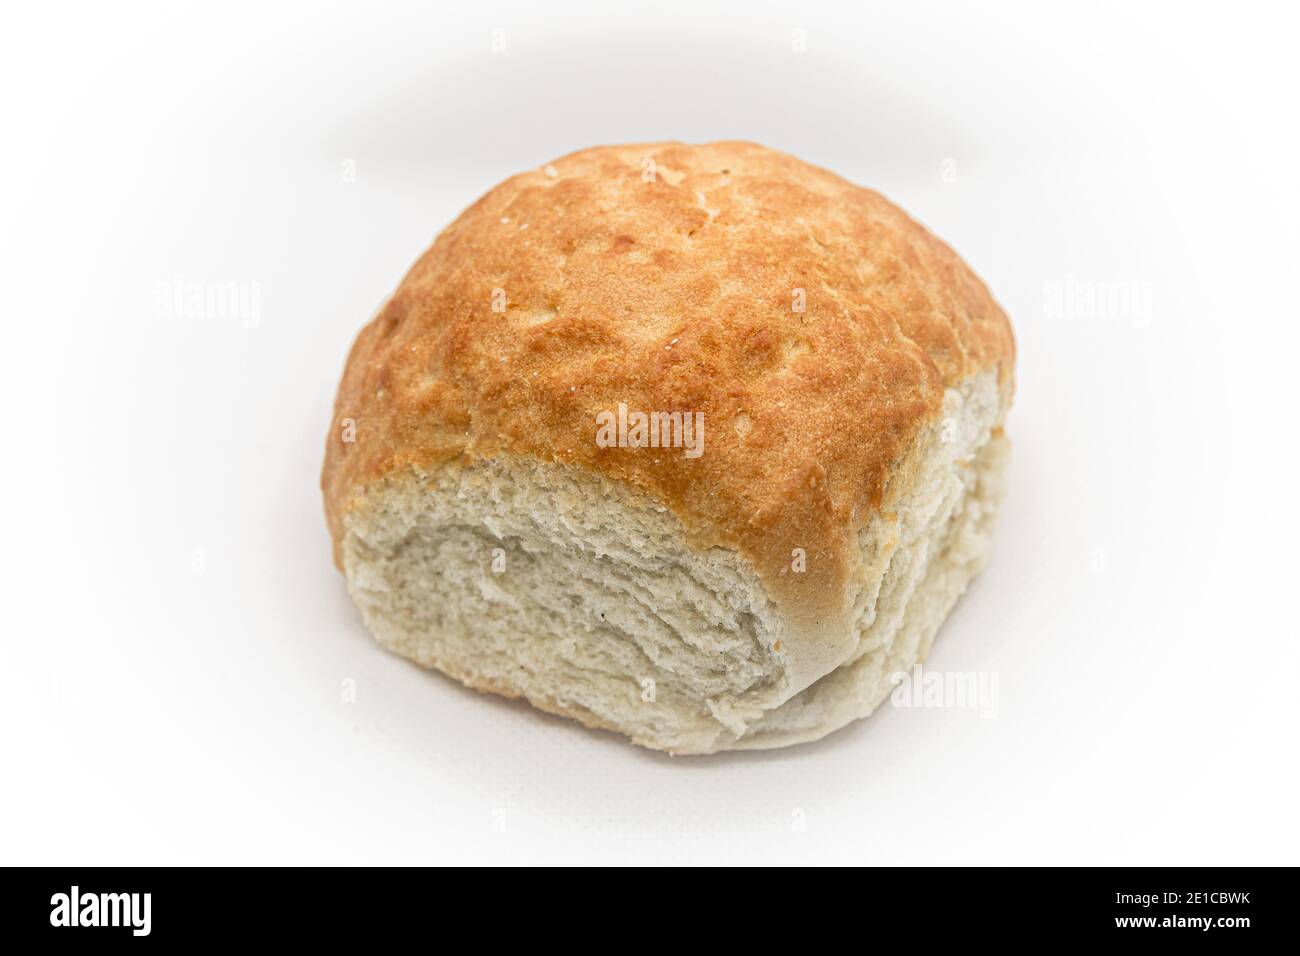 Tiger bread bun, white bread bap Stock Photo